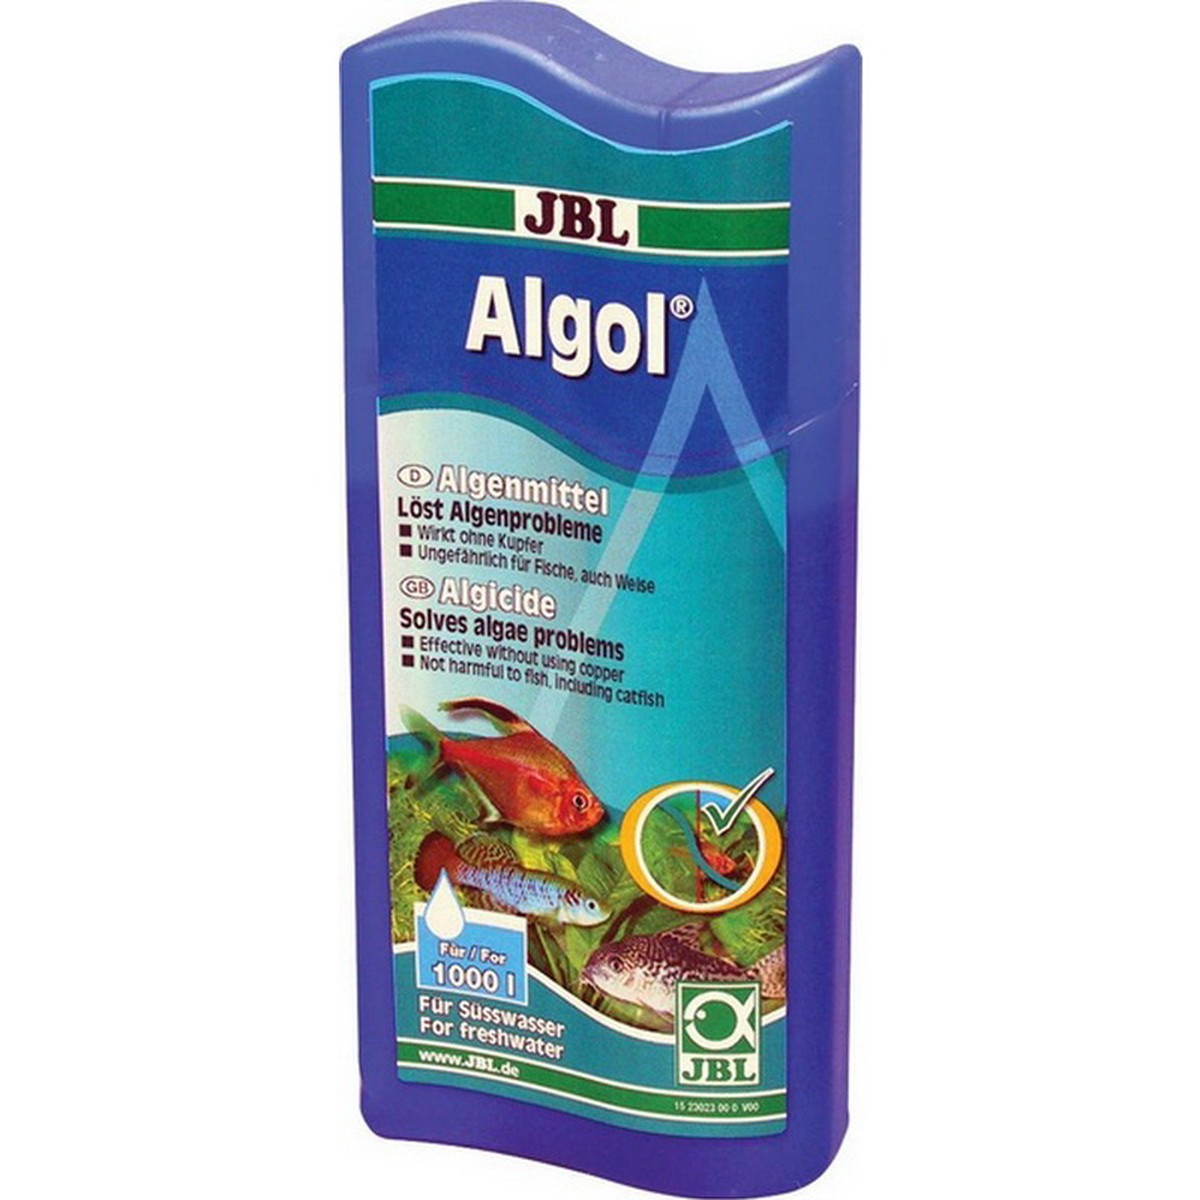   JBL Algol 250 ml pour 1000l F/NL  250ml